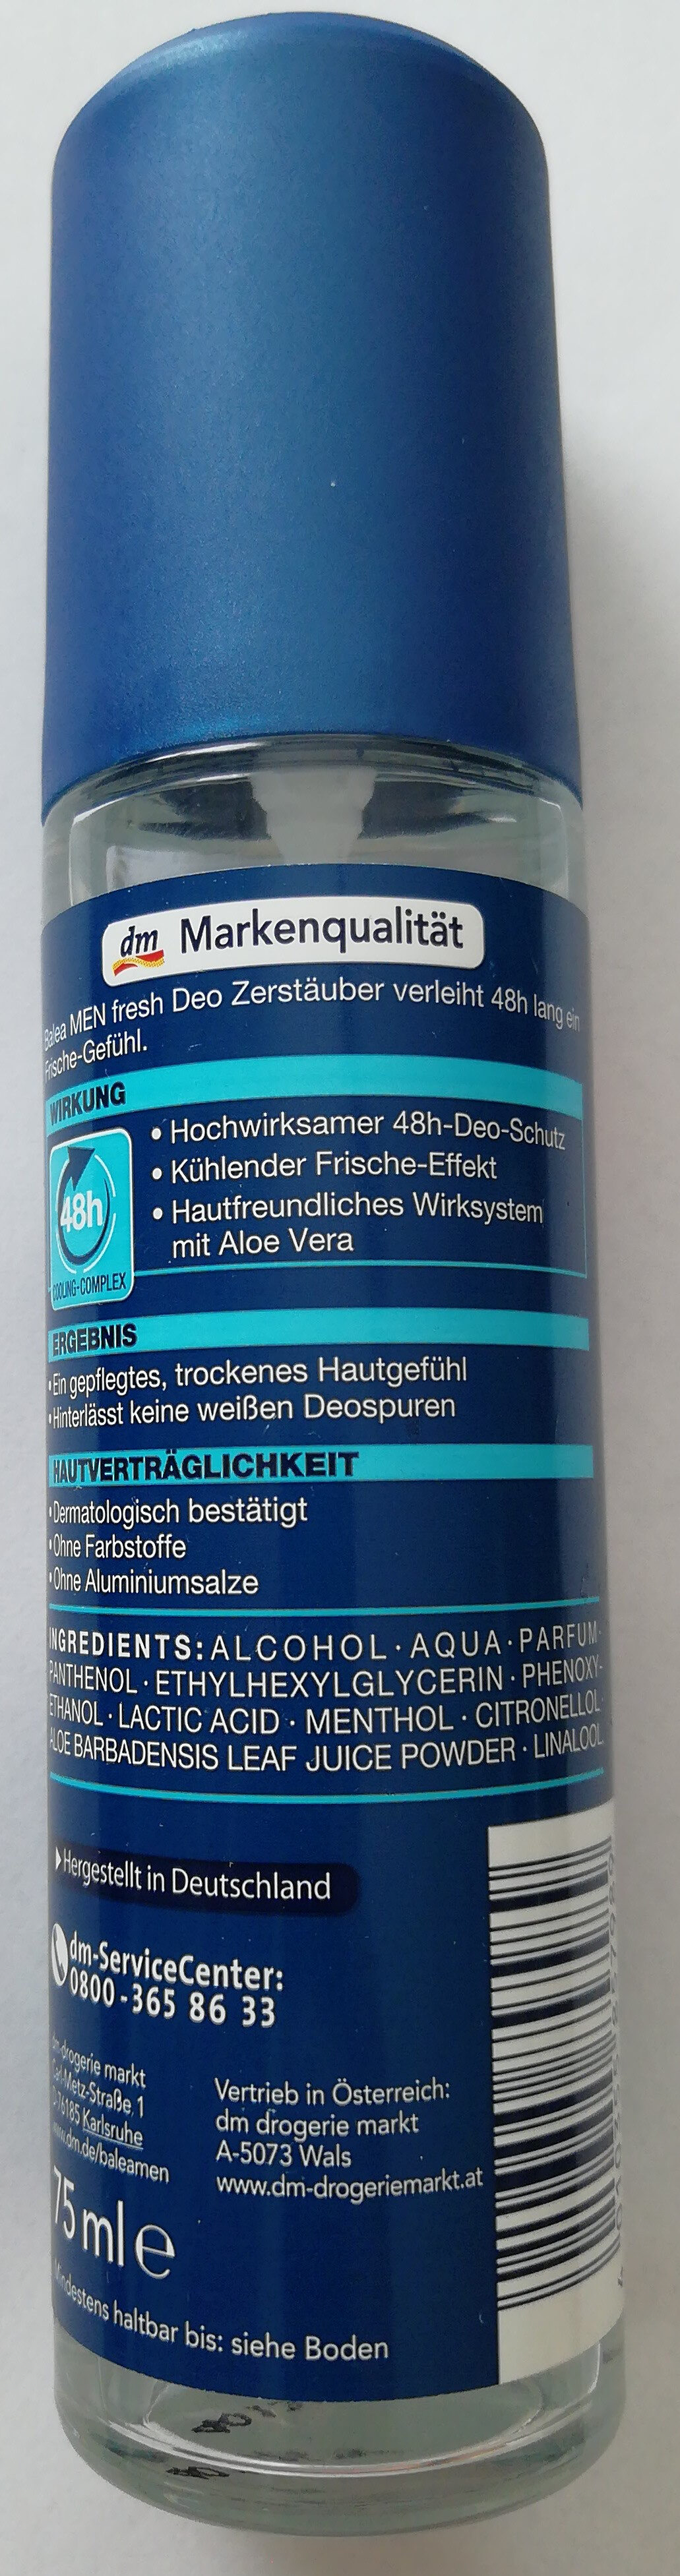 Fresh Deo Zerstäuber - Product - en